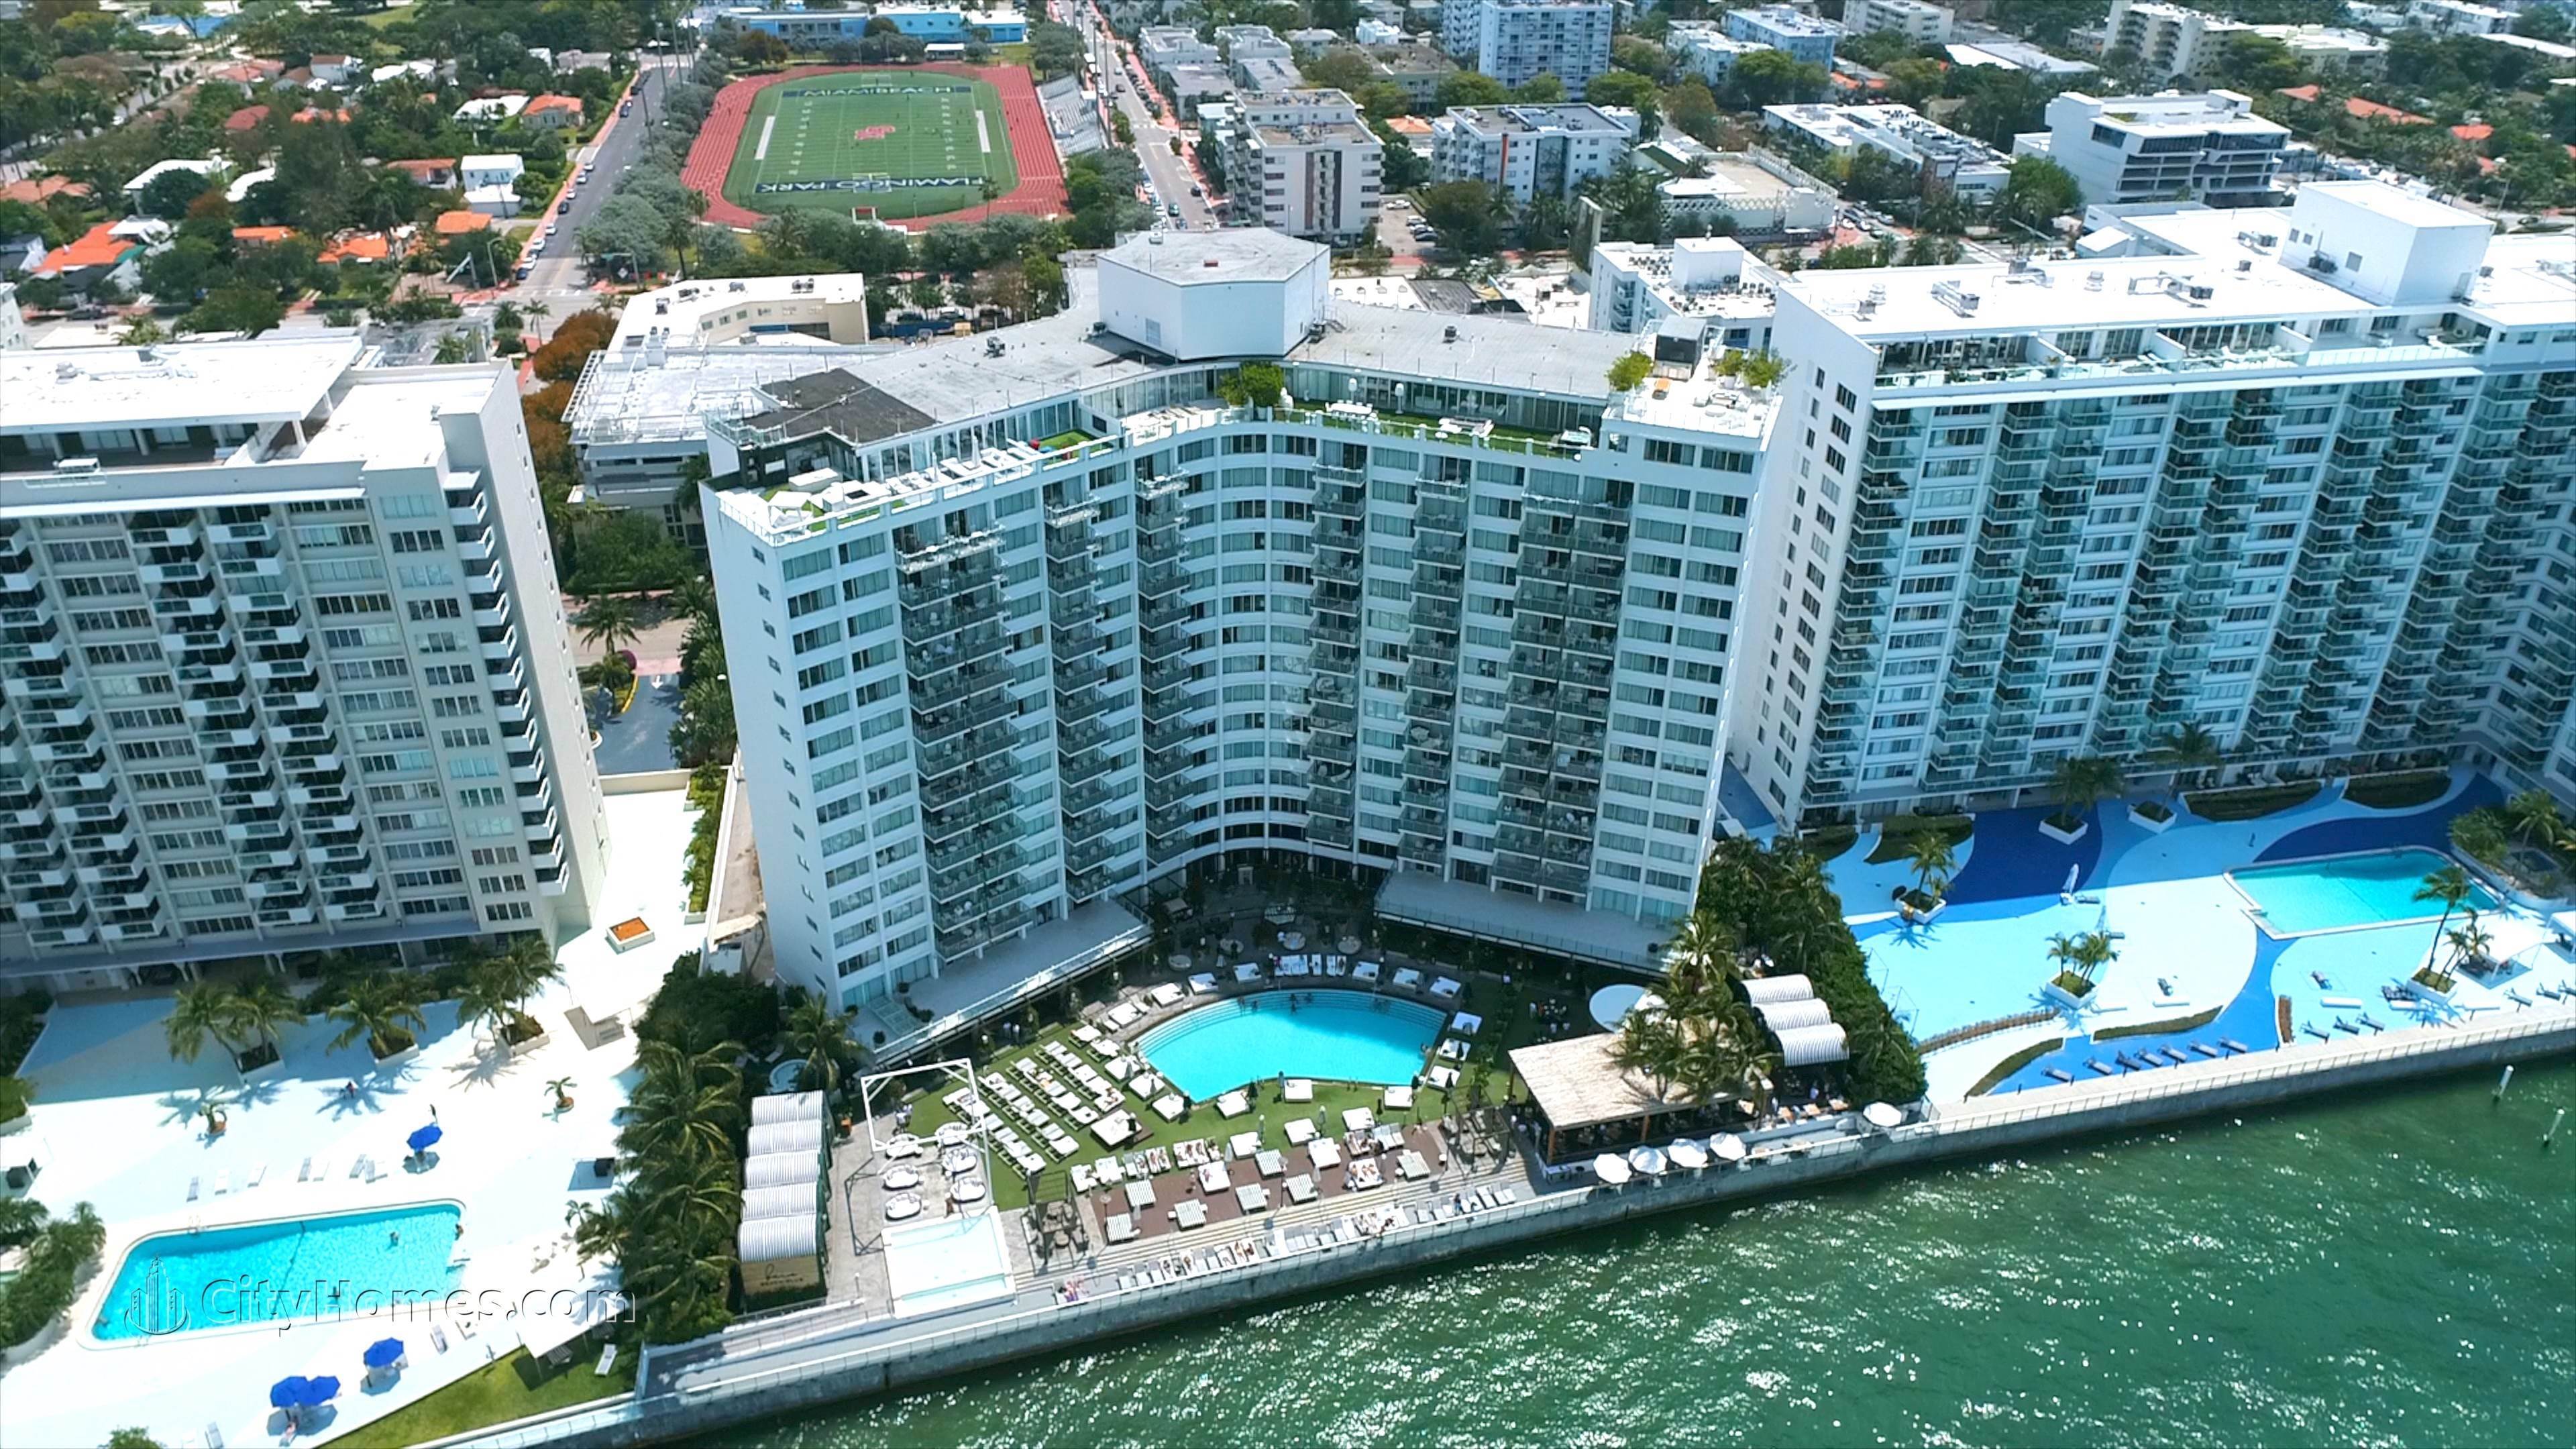 MONDRIAN SOUTH BEACH xây dựng tại 1100 West Avenue, Flamingo / Lummus, Miami Beach, FL 33139